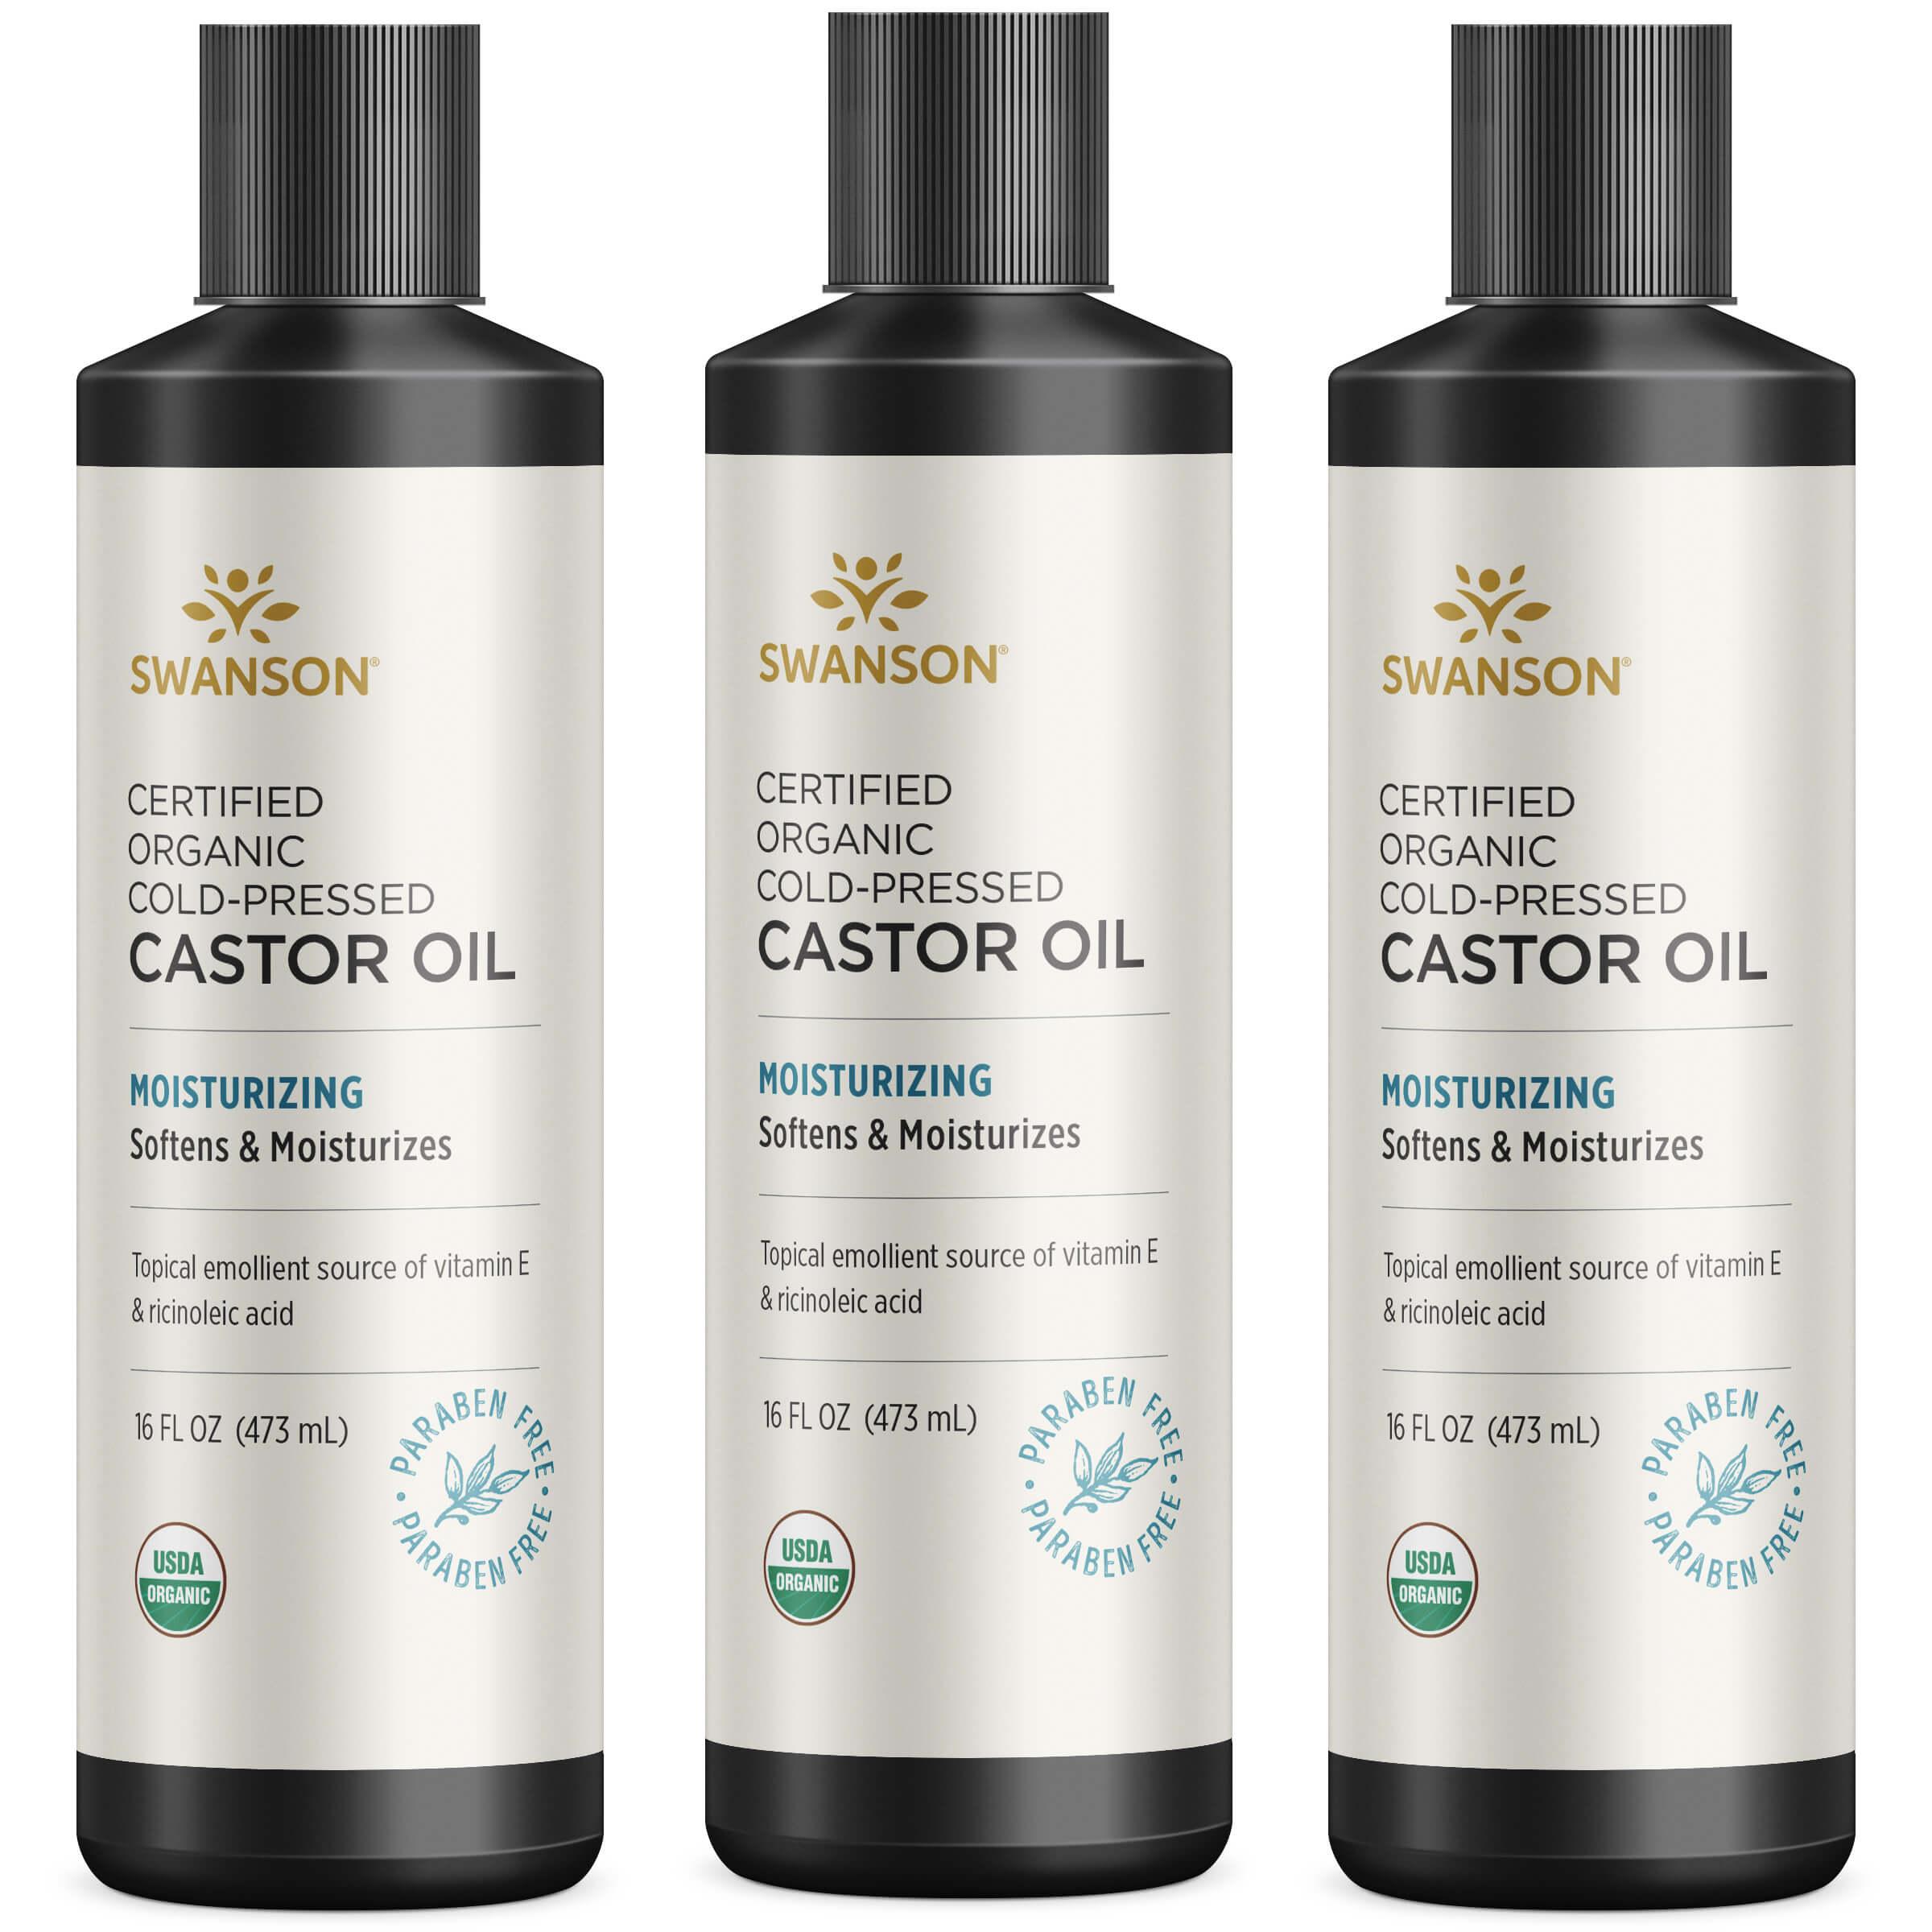 Swanson Premium Certified Organic Cold-Pressed Castor Oil 3 Pack 16 fl oz Liquid